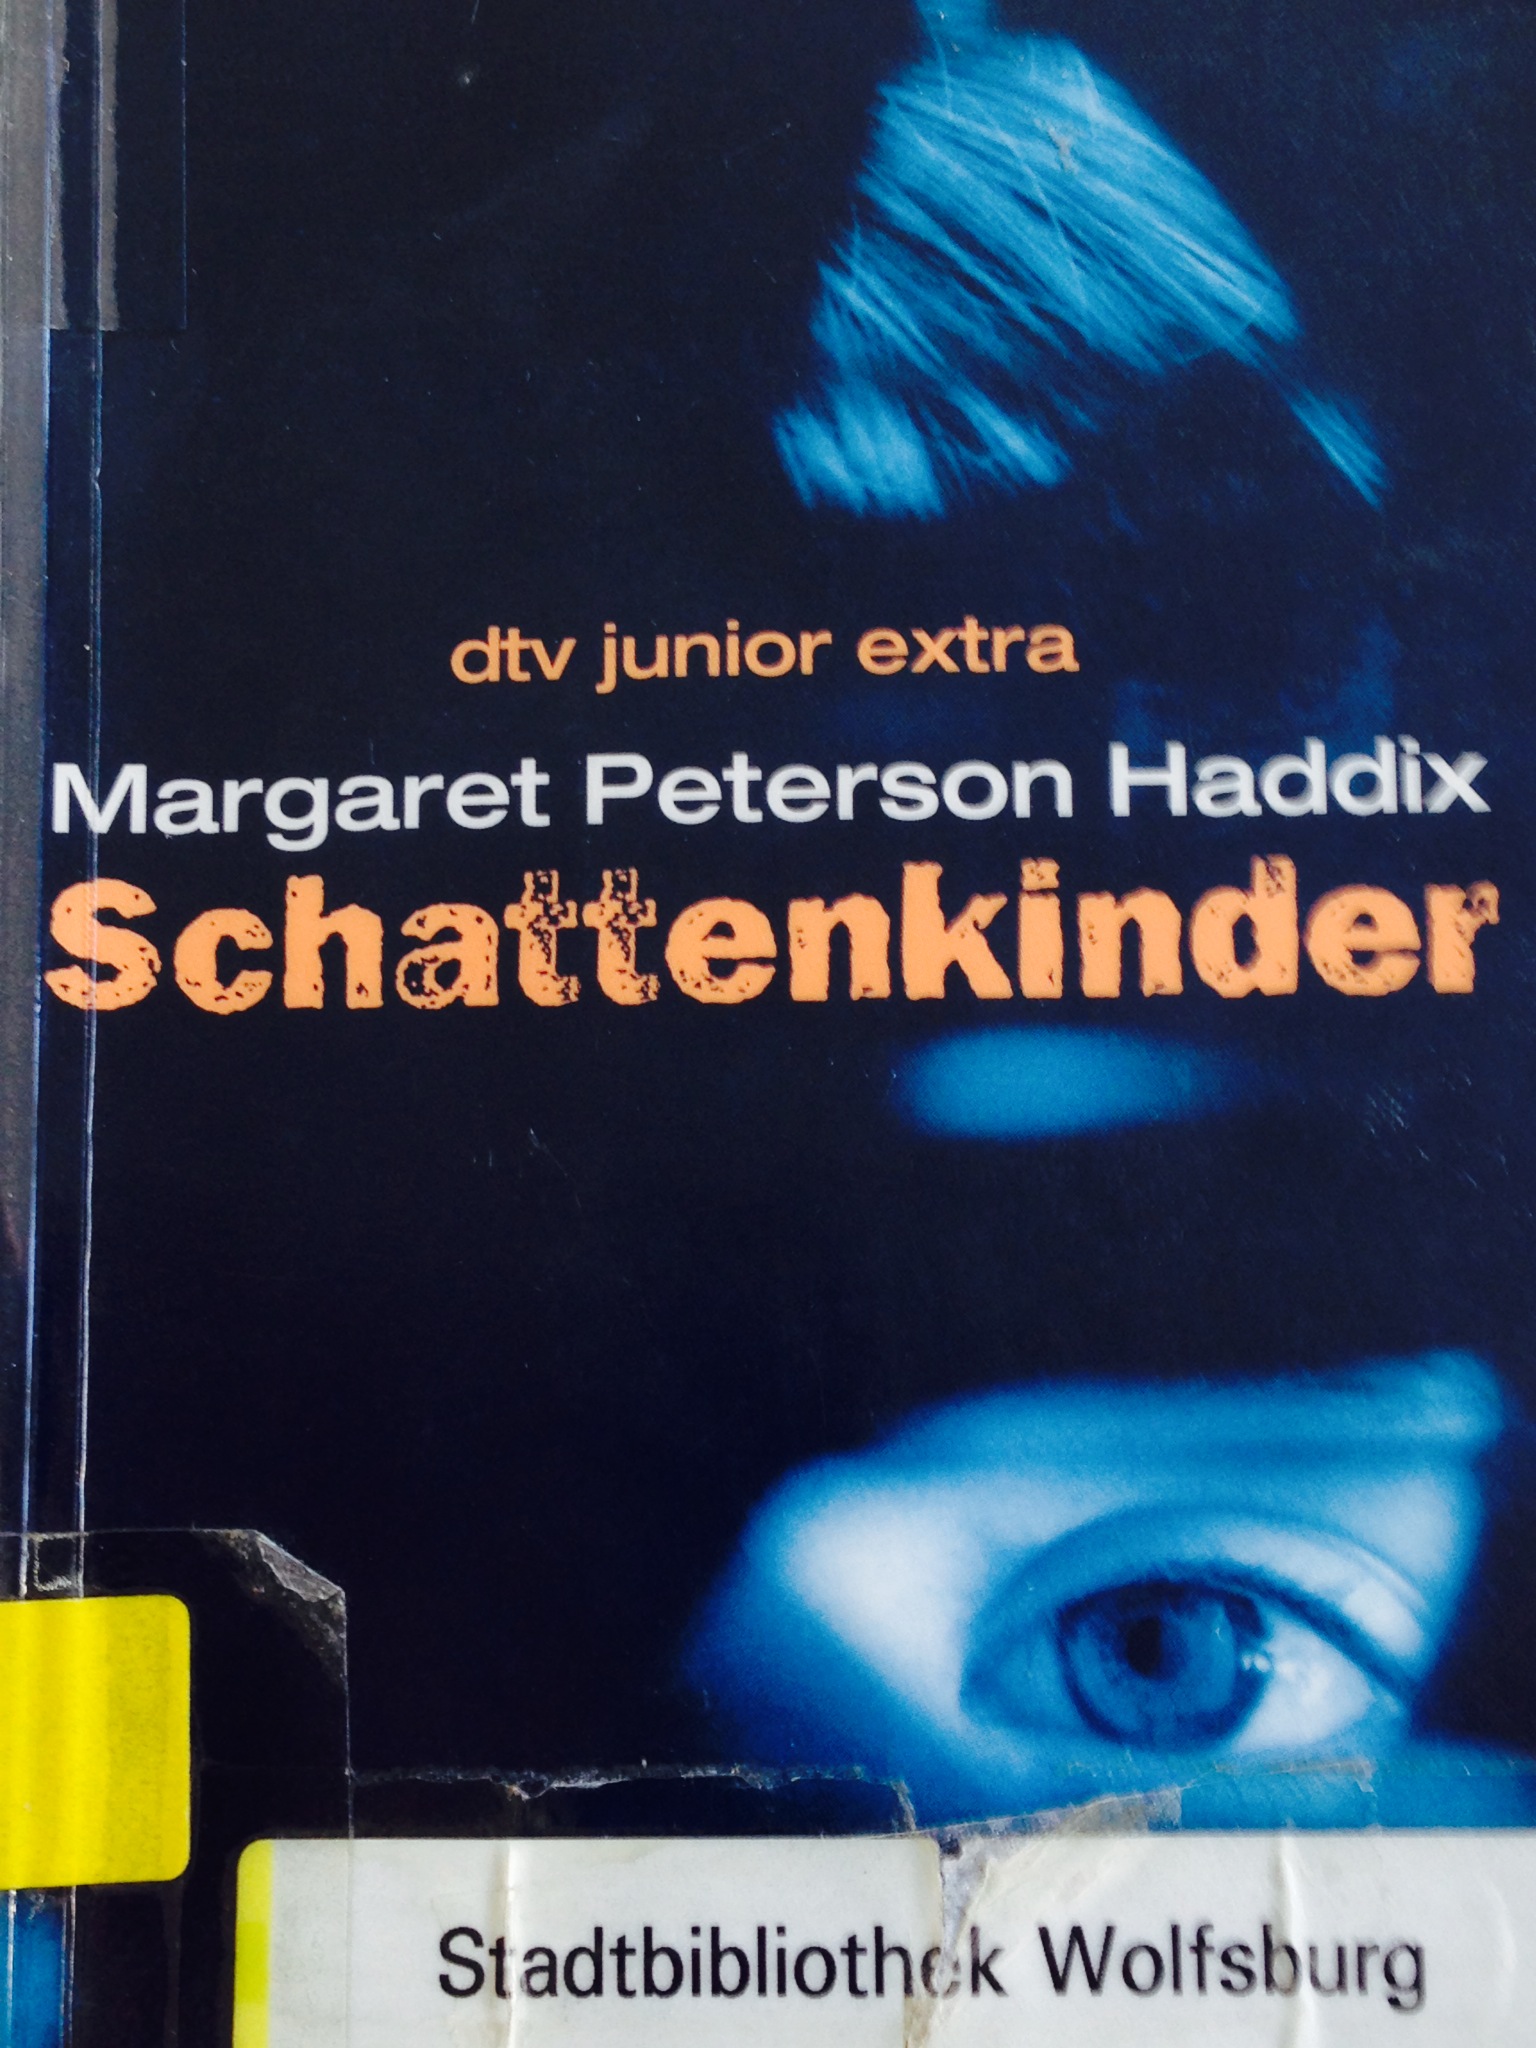 "Schattenkinder " - steht bei -J- Hadd in der Kinderbibliothek